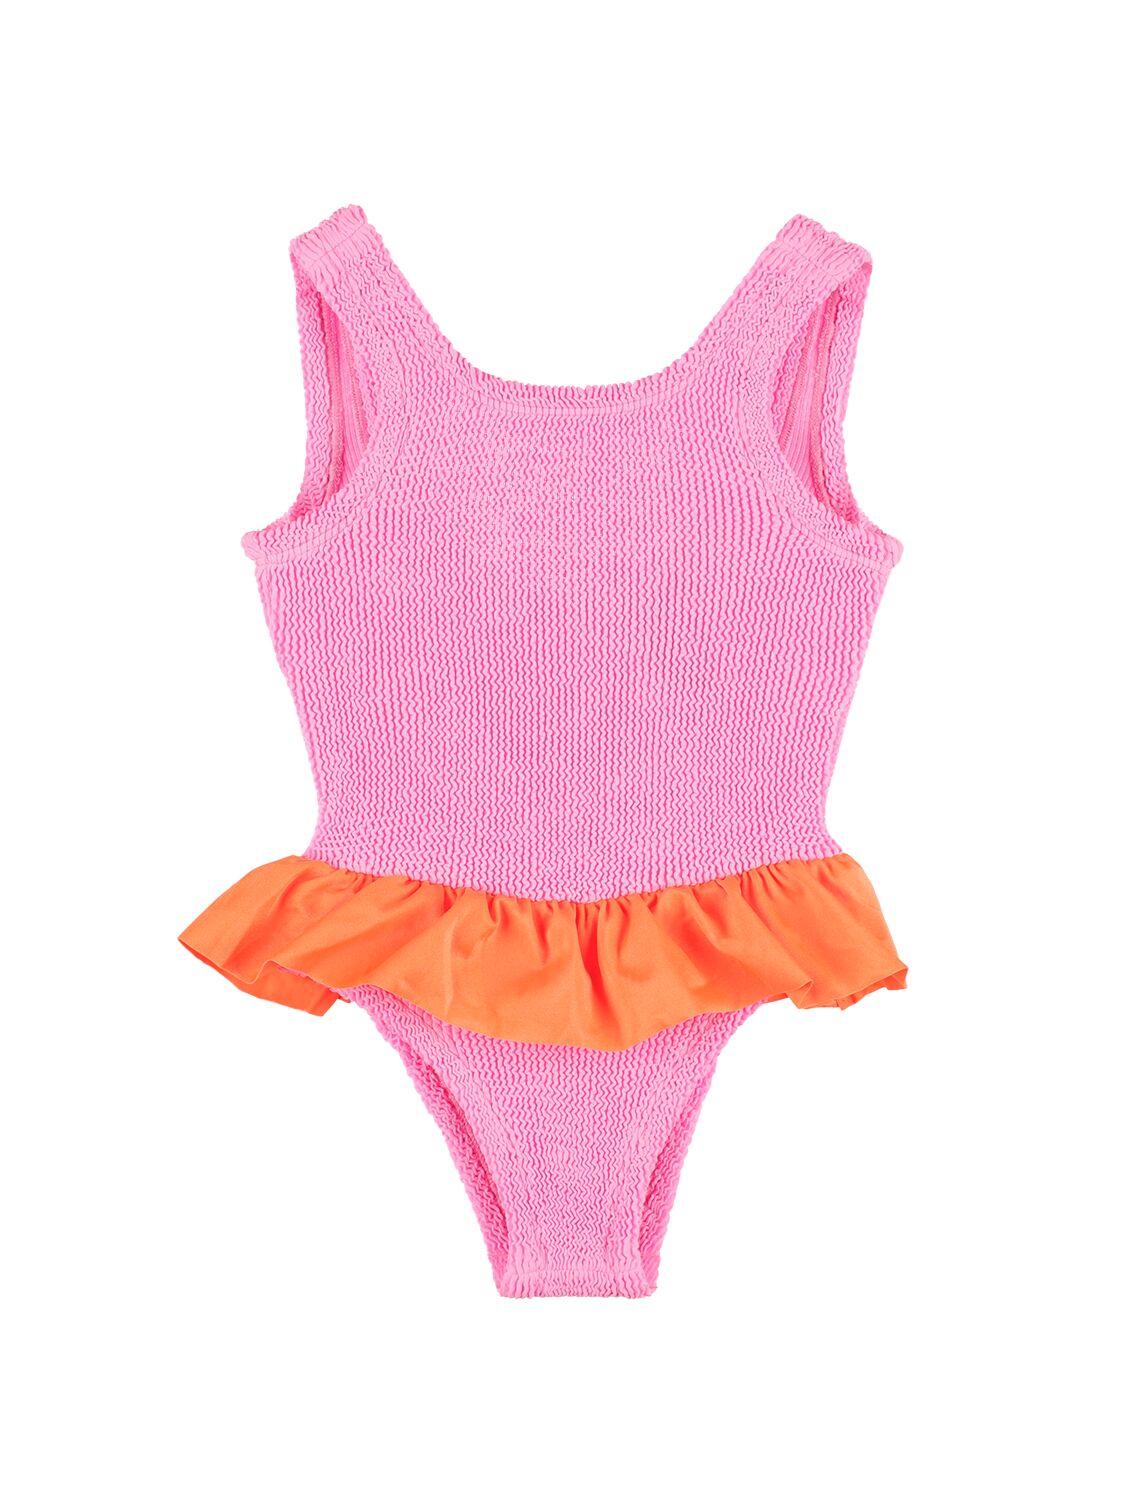 Hunza G Kids' One Piece Lycra Swimsuit W/ Ruffle In Pink,orange